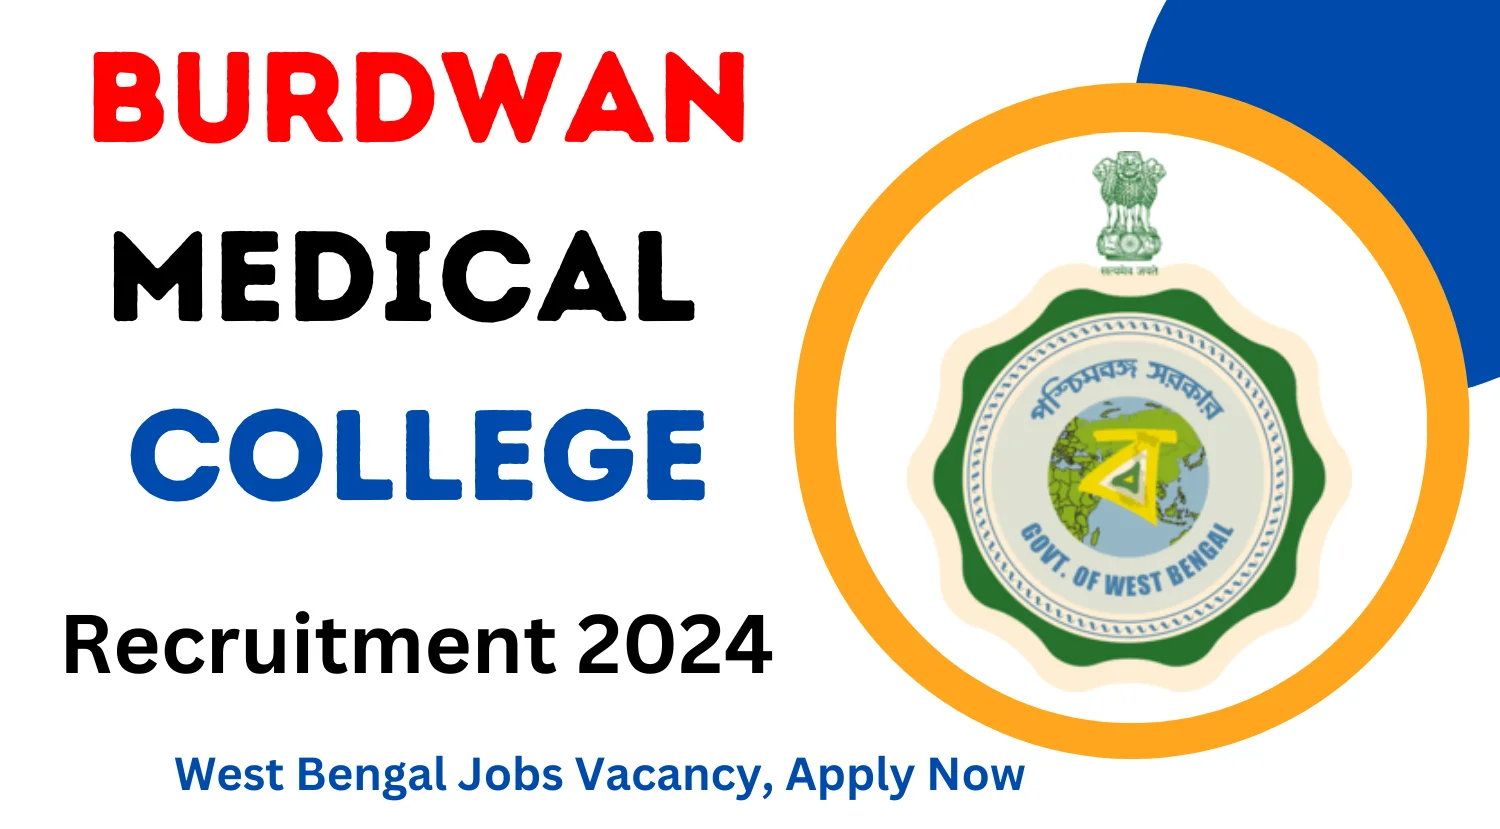 Burdwan Medical College Recruitment 2024